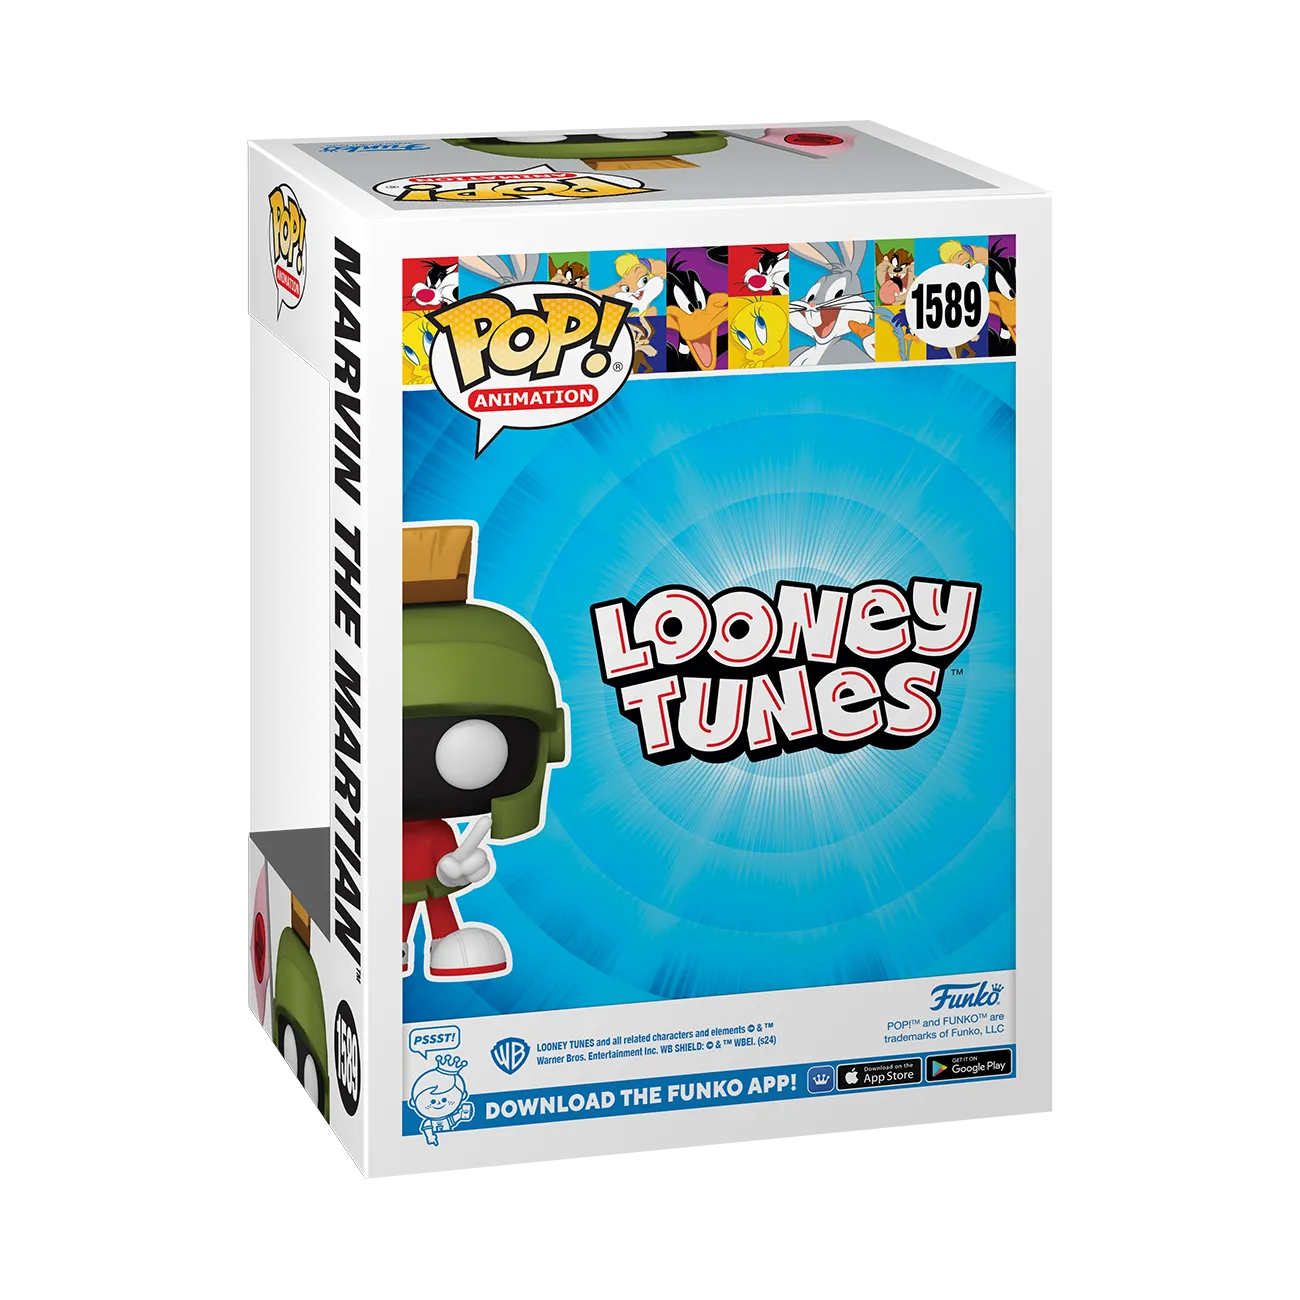 Looney Tunes - Marvin el marciano Pop! Vinilo (Exclusivo de la Convención de Verano de 2024)